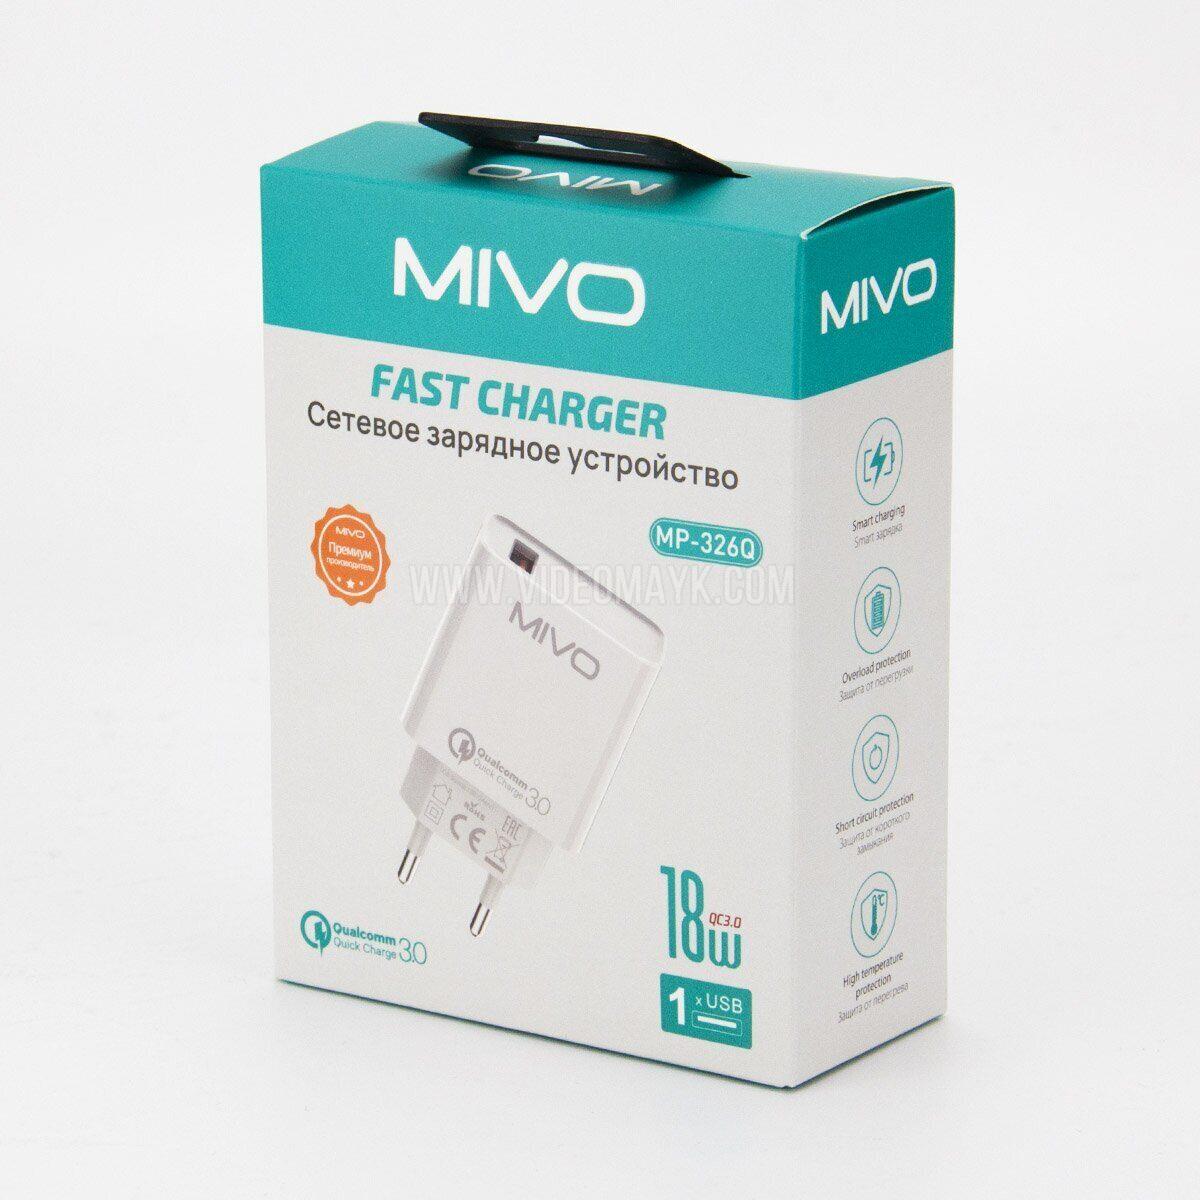 Сетевое зарядное устройство Mivo MP-326Q, 18W, USB